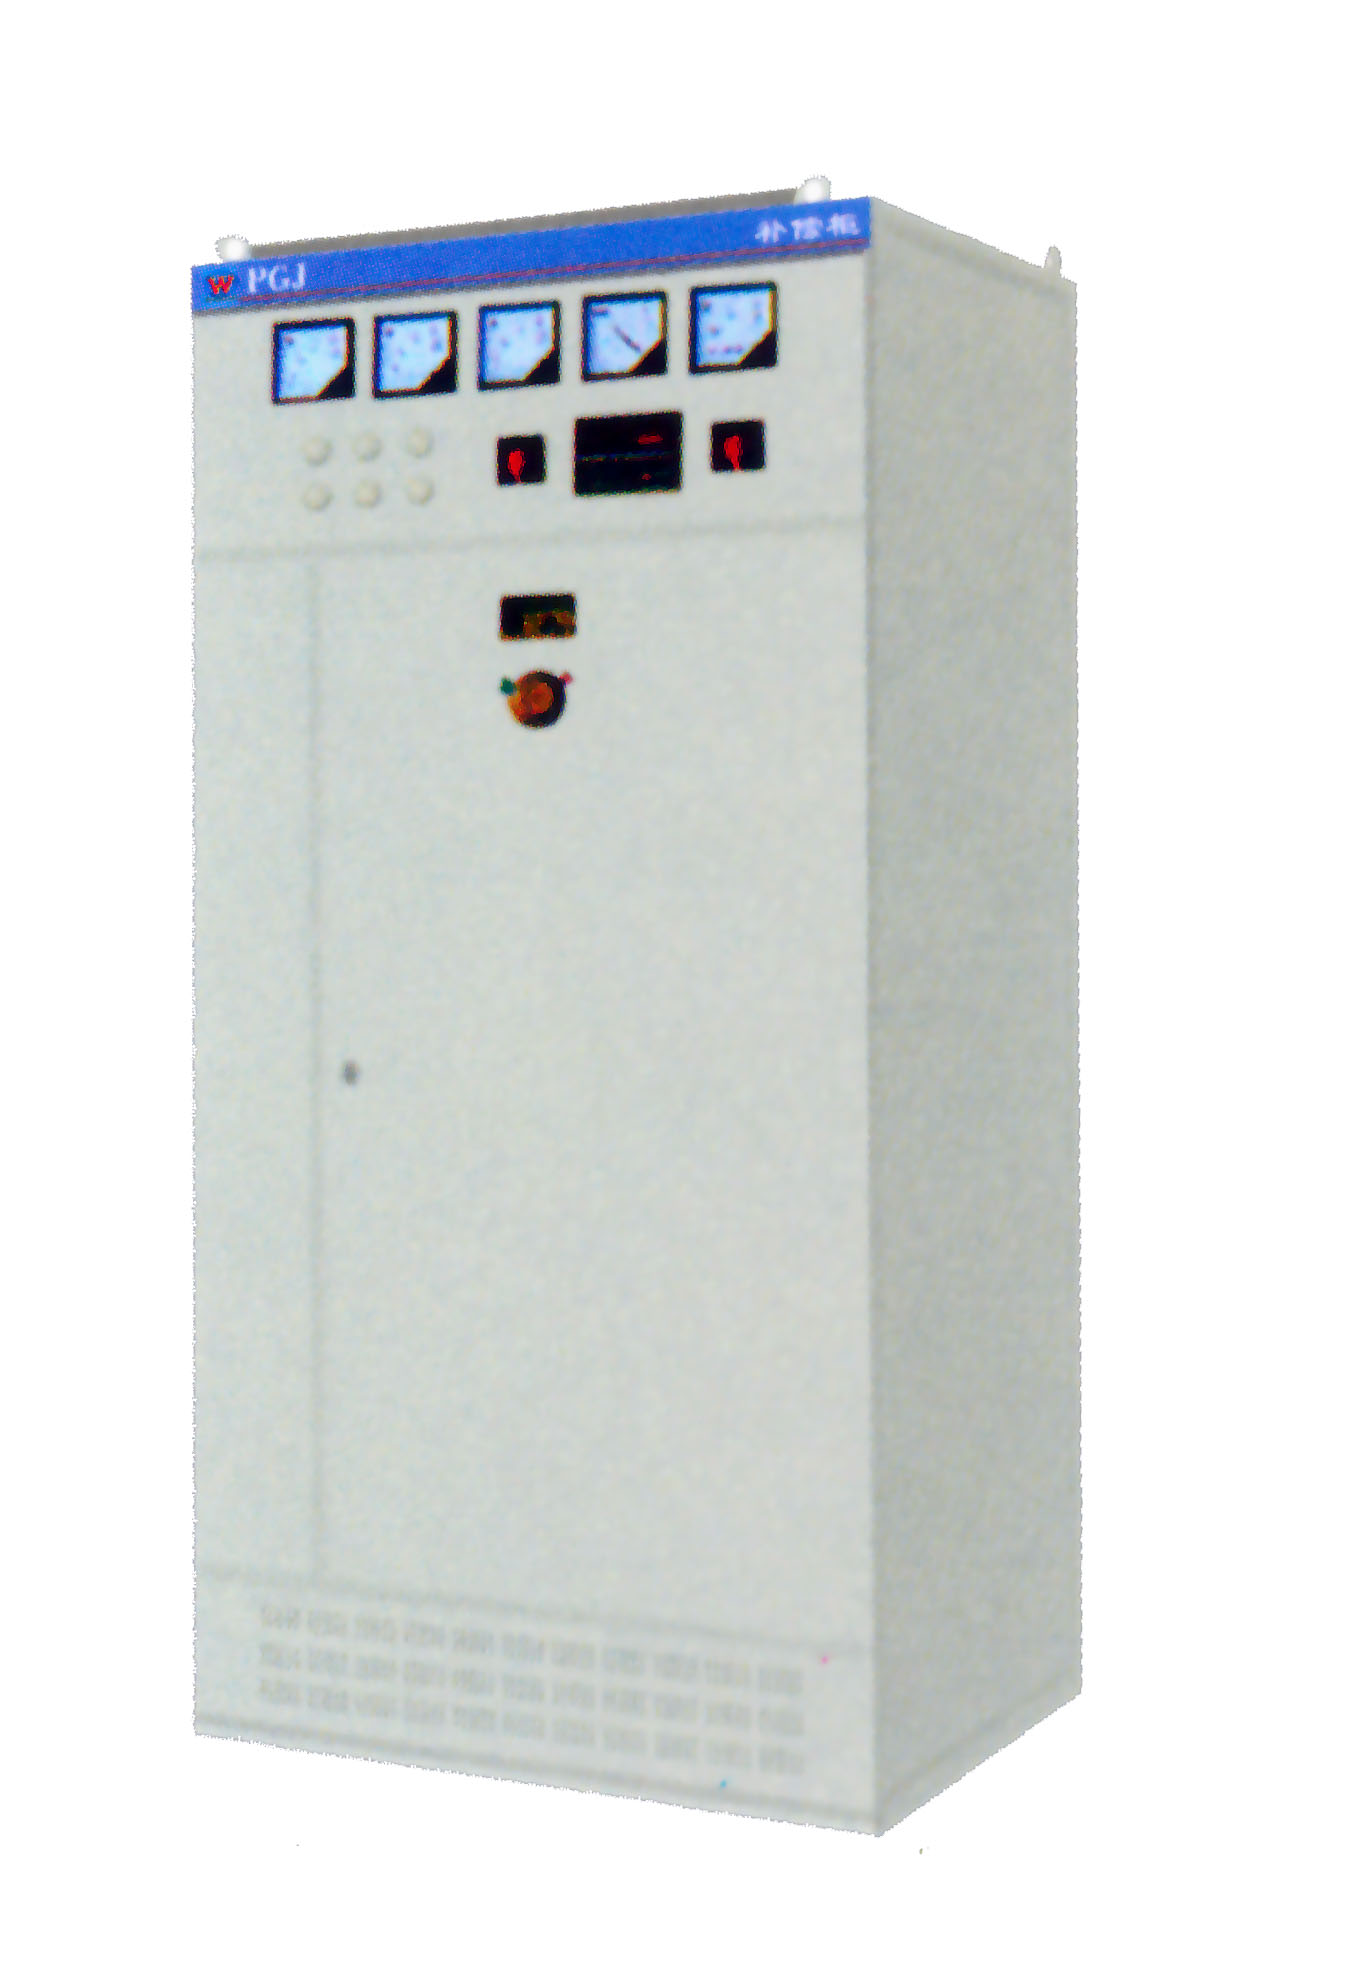 低压电容补偿柜WPGJ电容柜无功补偿装置成套电气设备厂家